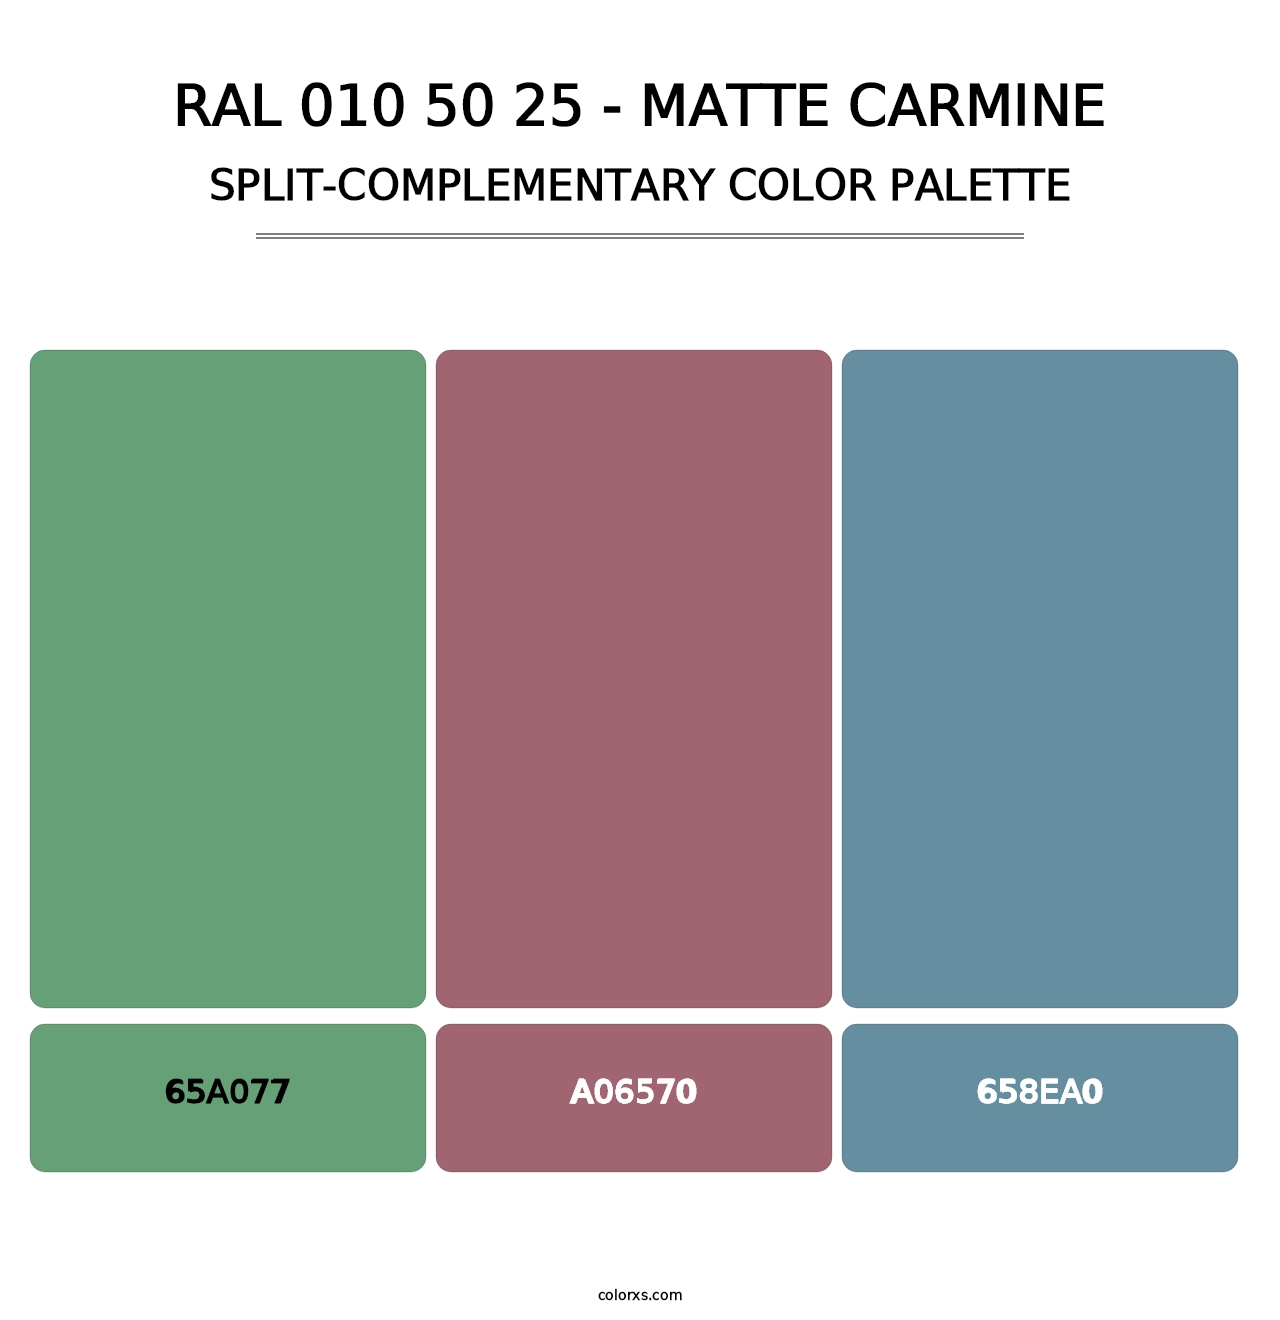 RAL 010 50 25 - Matte Carmine - Split-Complementary Color Palette